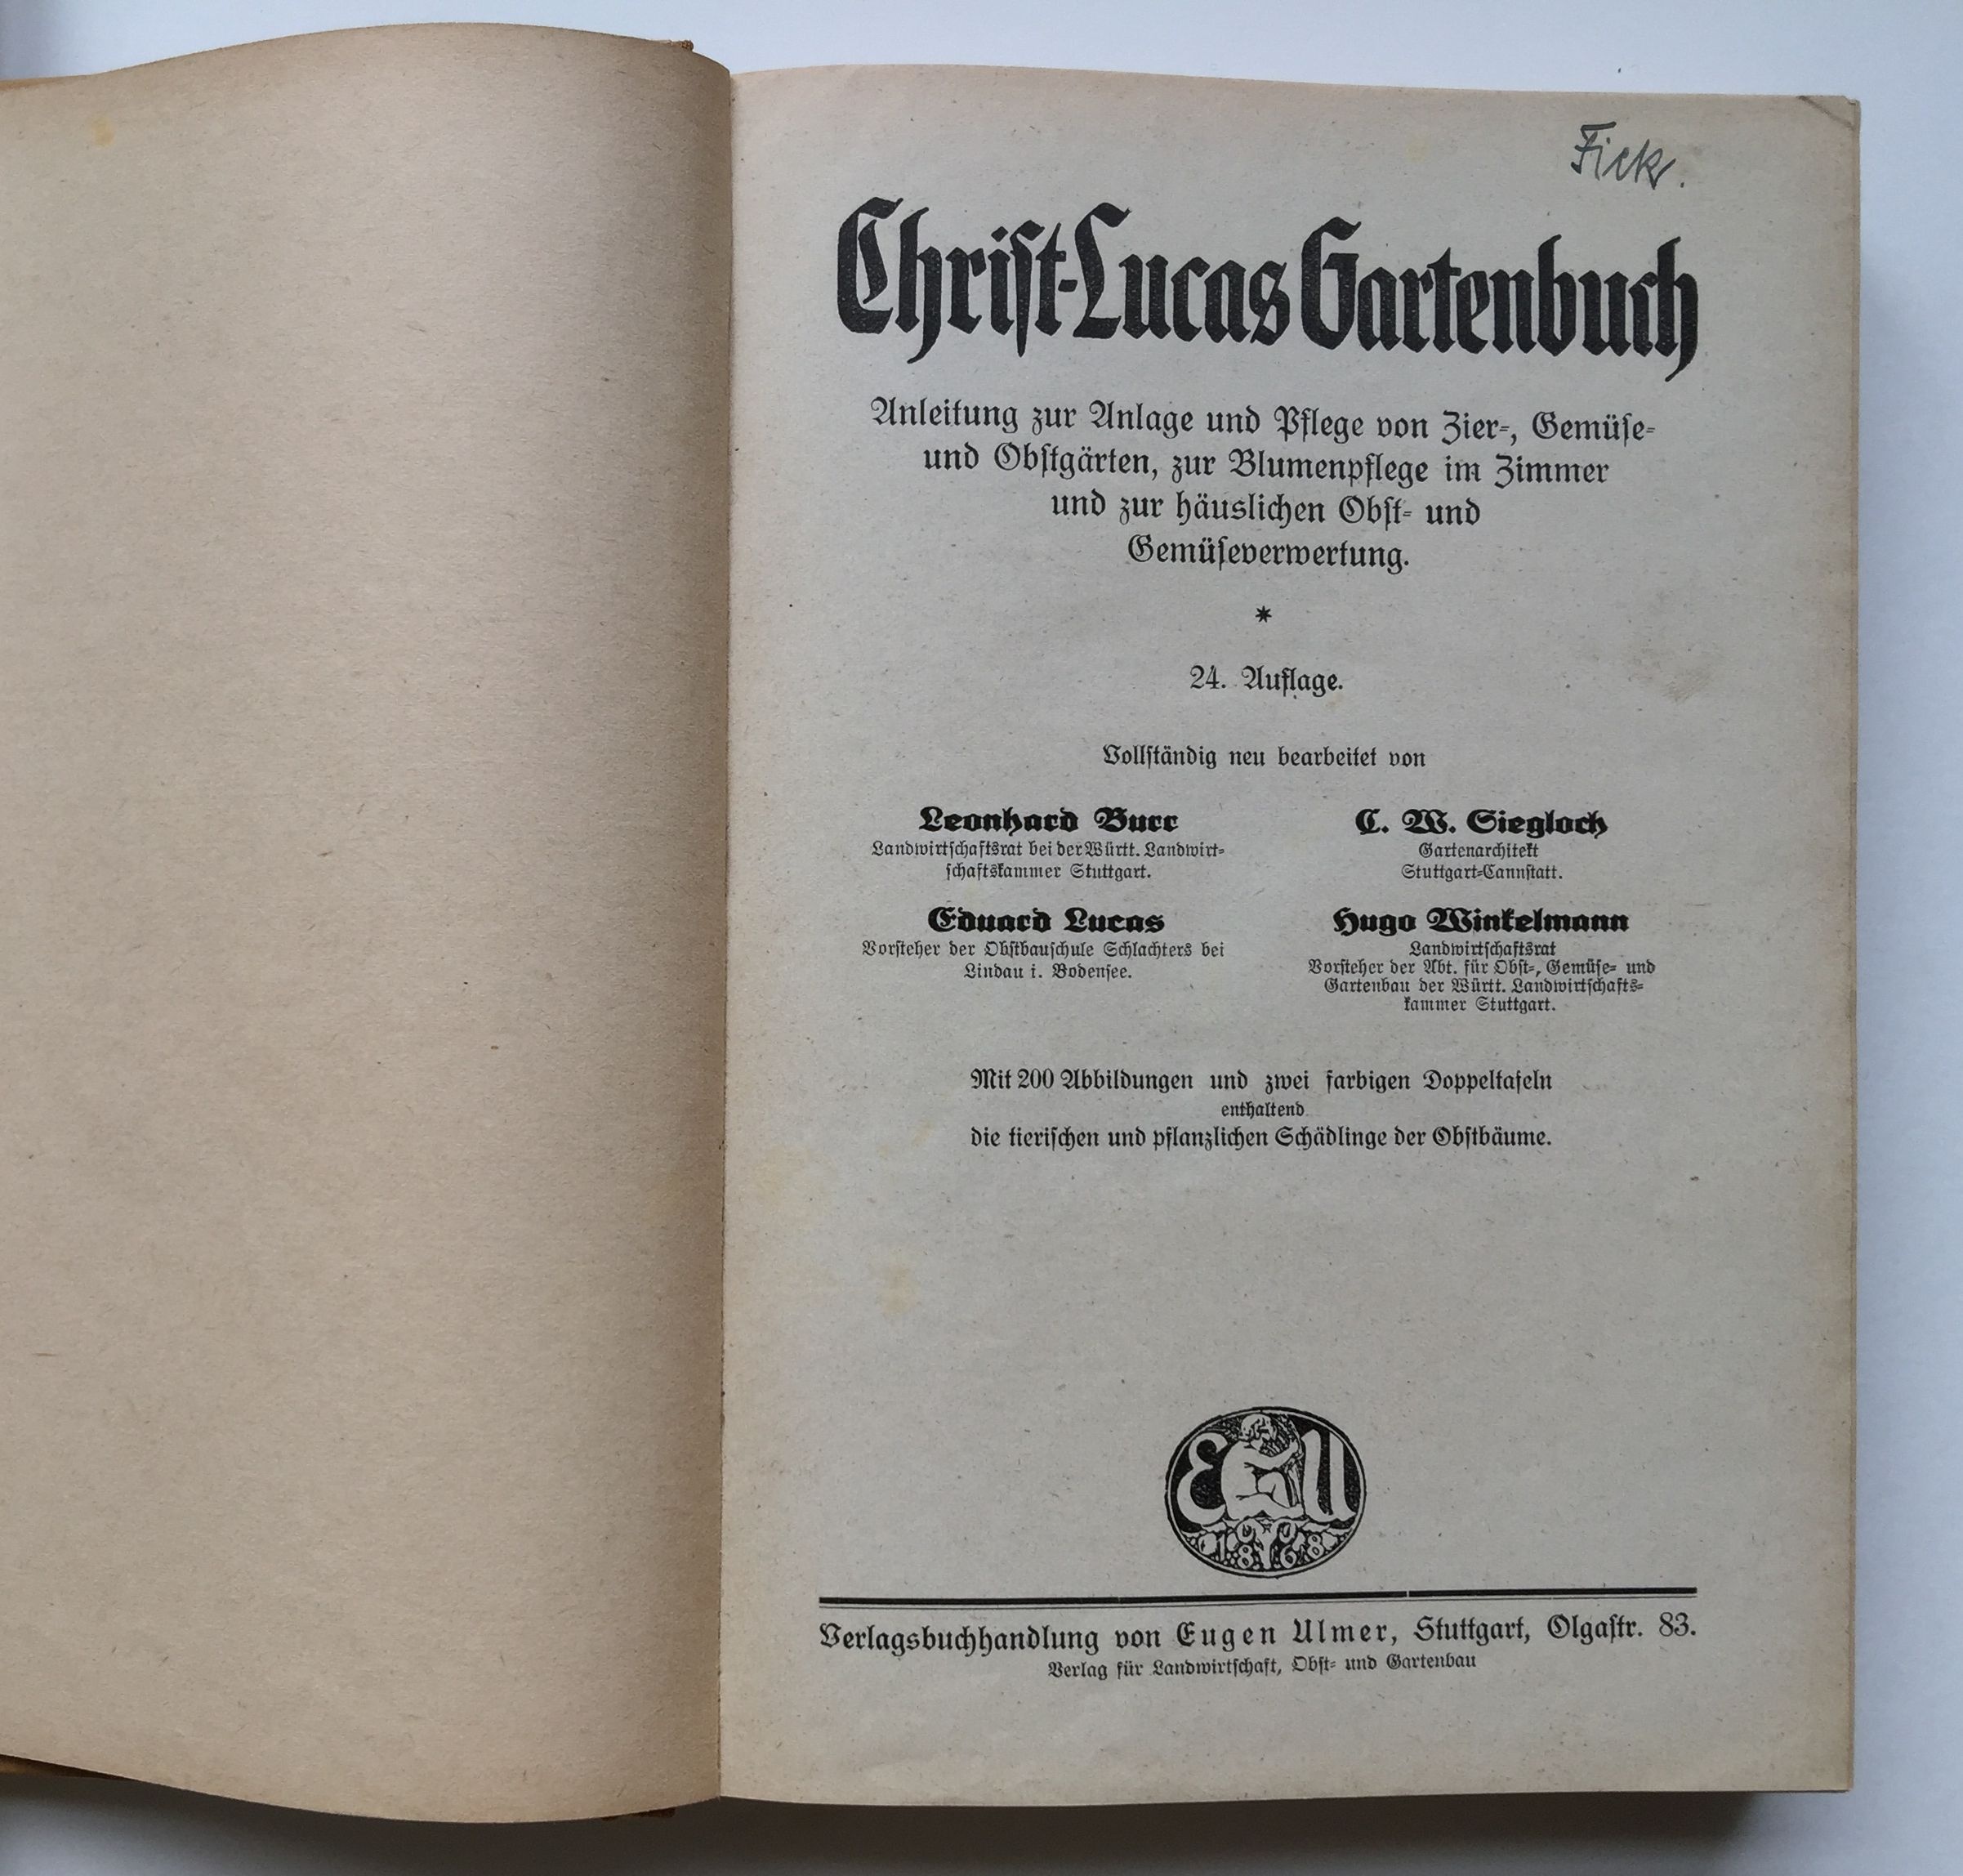 Burr/Lucas/Siegloch Winkelmann, Christ-Lucas Gartenbuch, 24. Auflage, 1930 (Taunus-Rhein-Main - Regionalgeschichtliche Sammlung Dr. Stefan Naas CC BY-NC-SA)